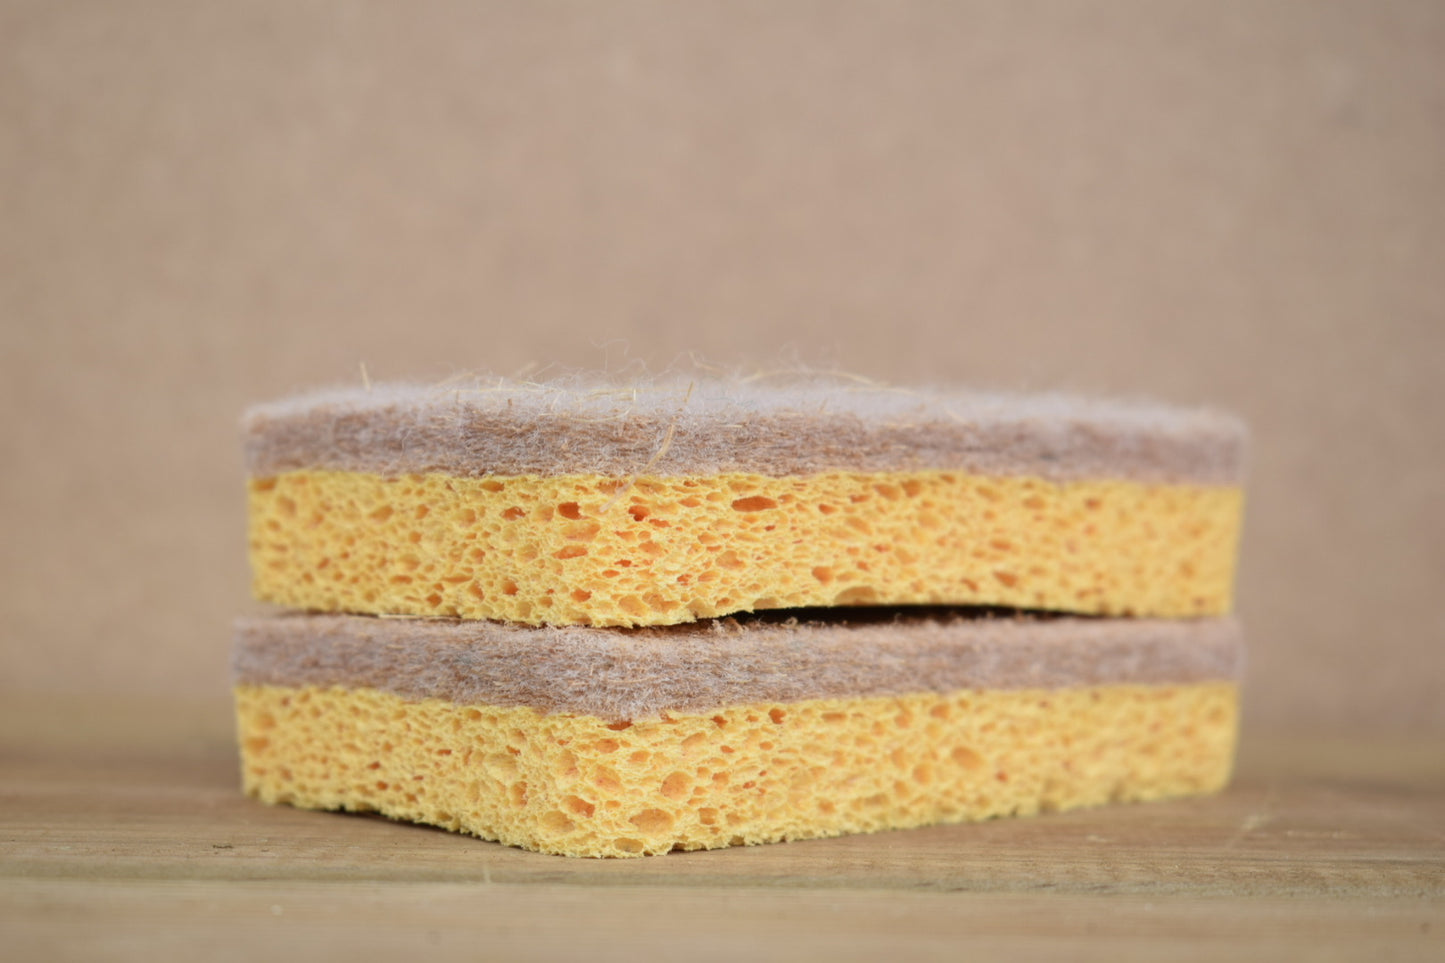 Sisal & Wood Pulp Sponge (2 Pack)